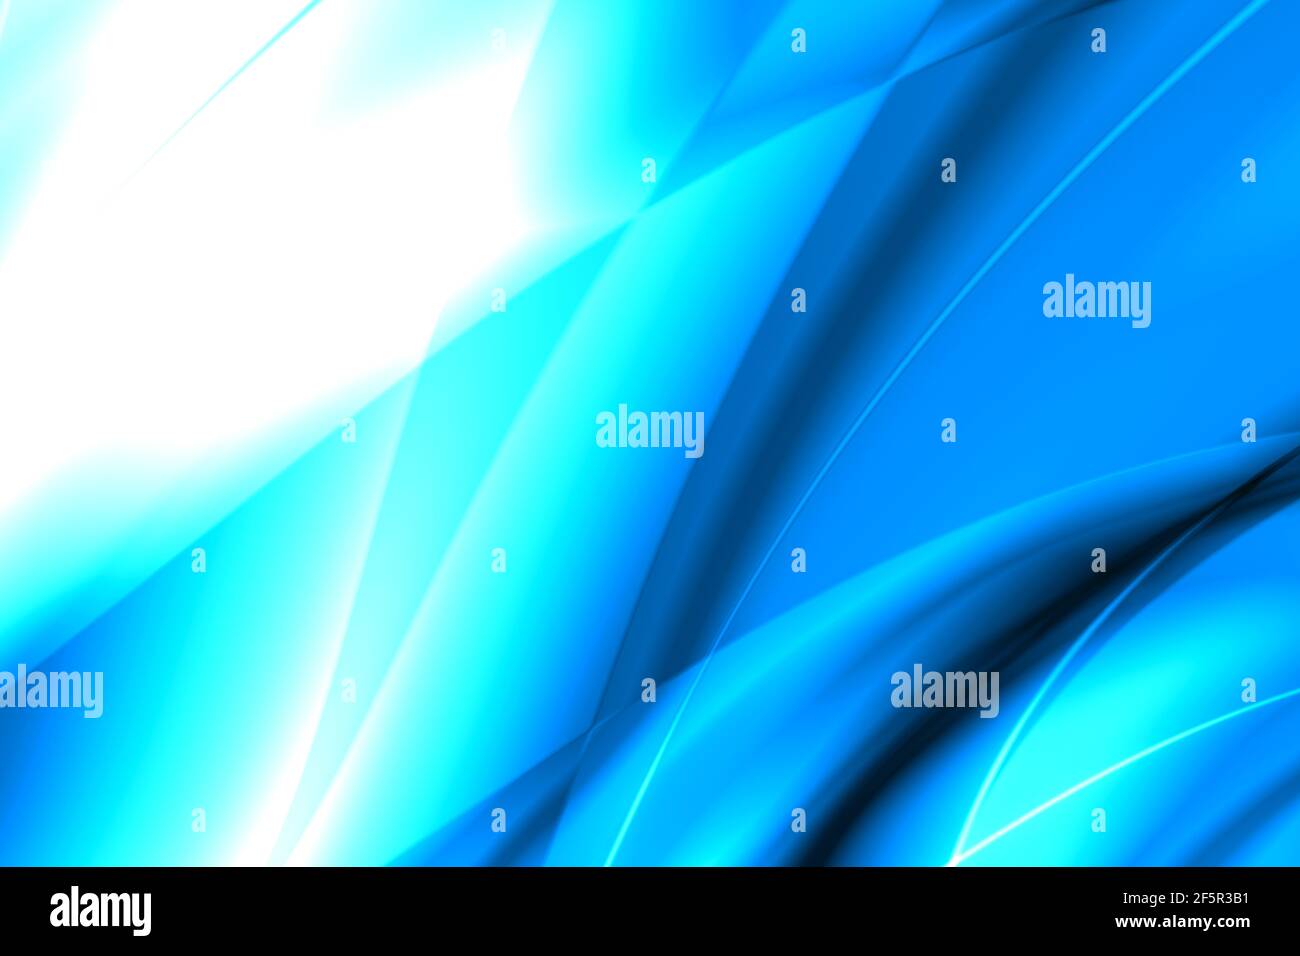 Pittura astratta in blu, turchese e ciano gradazione colore mix formando turchese blu gradiente blu onde. Utilizzato come sfondo per dispositivi mobili. Foto Stock